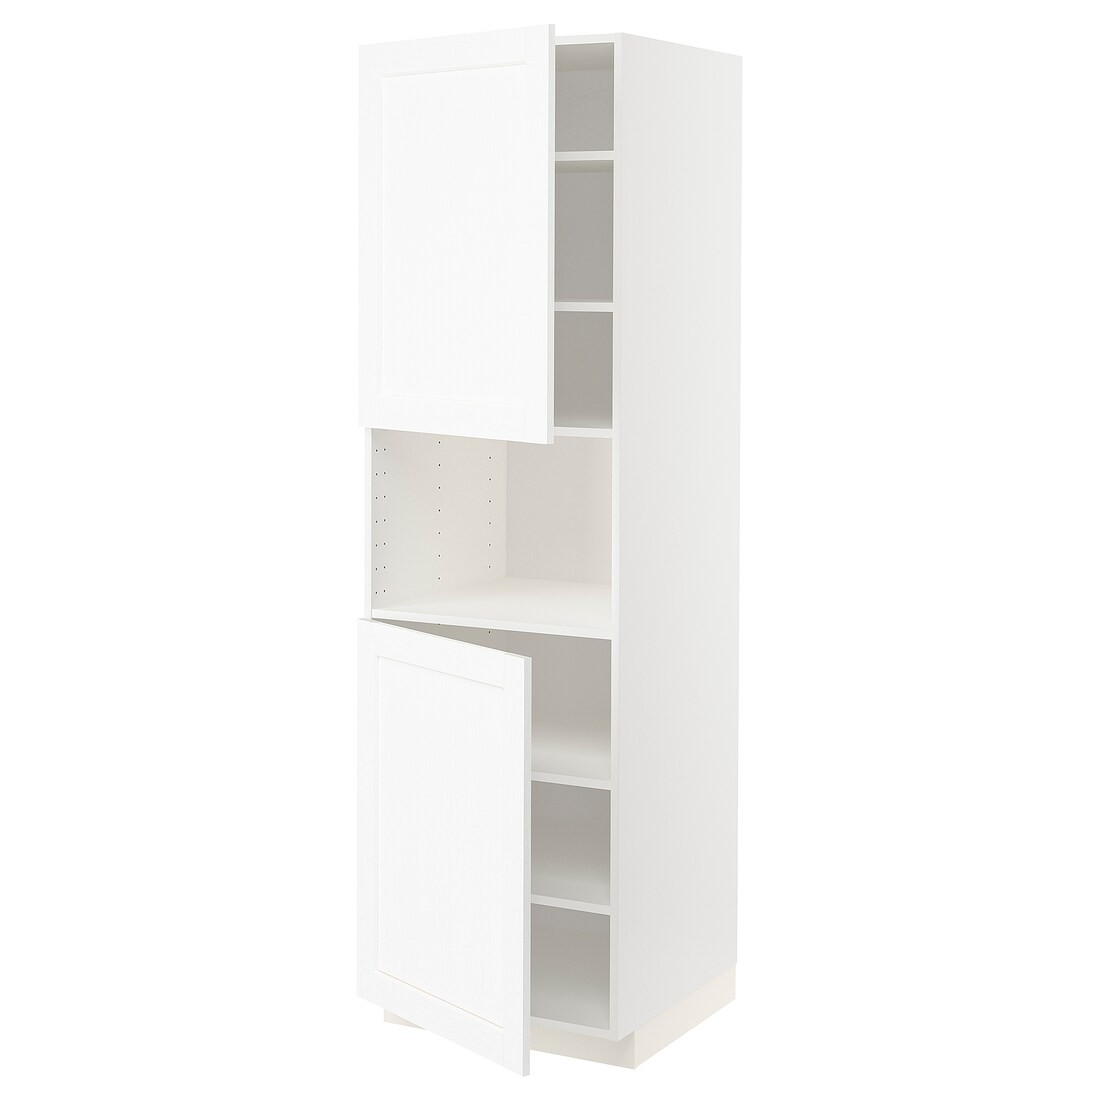 METOD МЕТОД Высокий шкаф для СВЧ / 2 дверцы / полки, белый Enköping / белый имитация дерева, 60x60x200 см